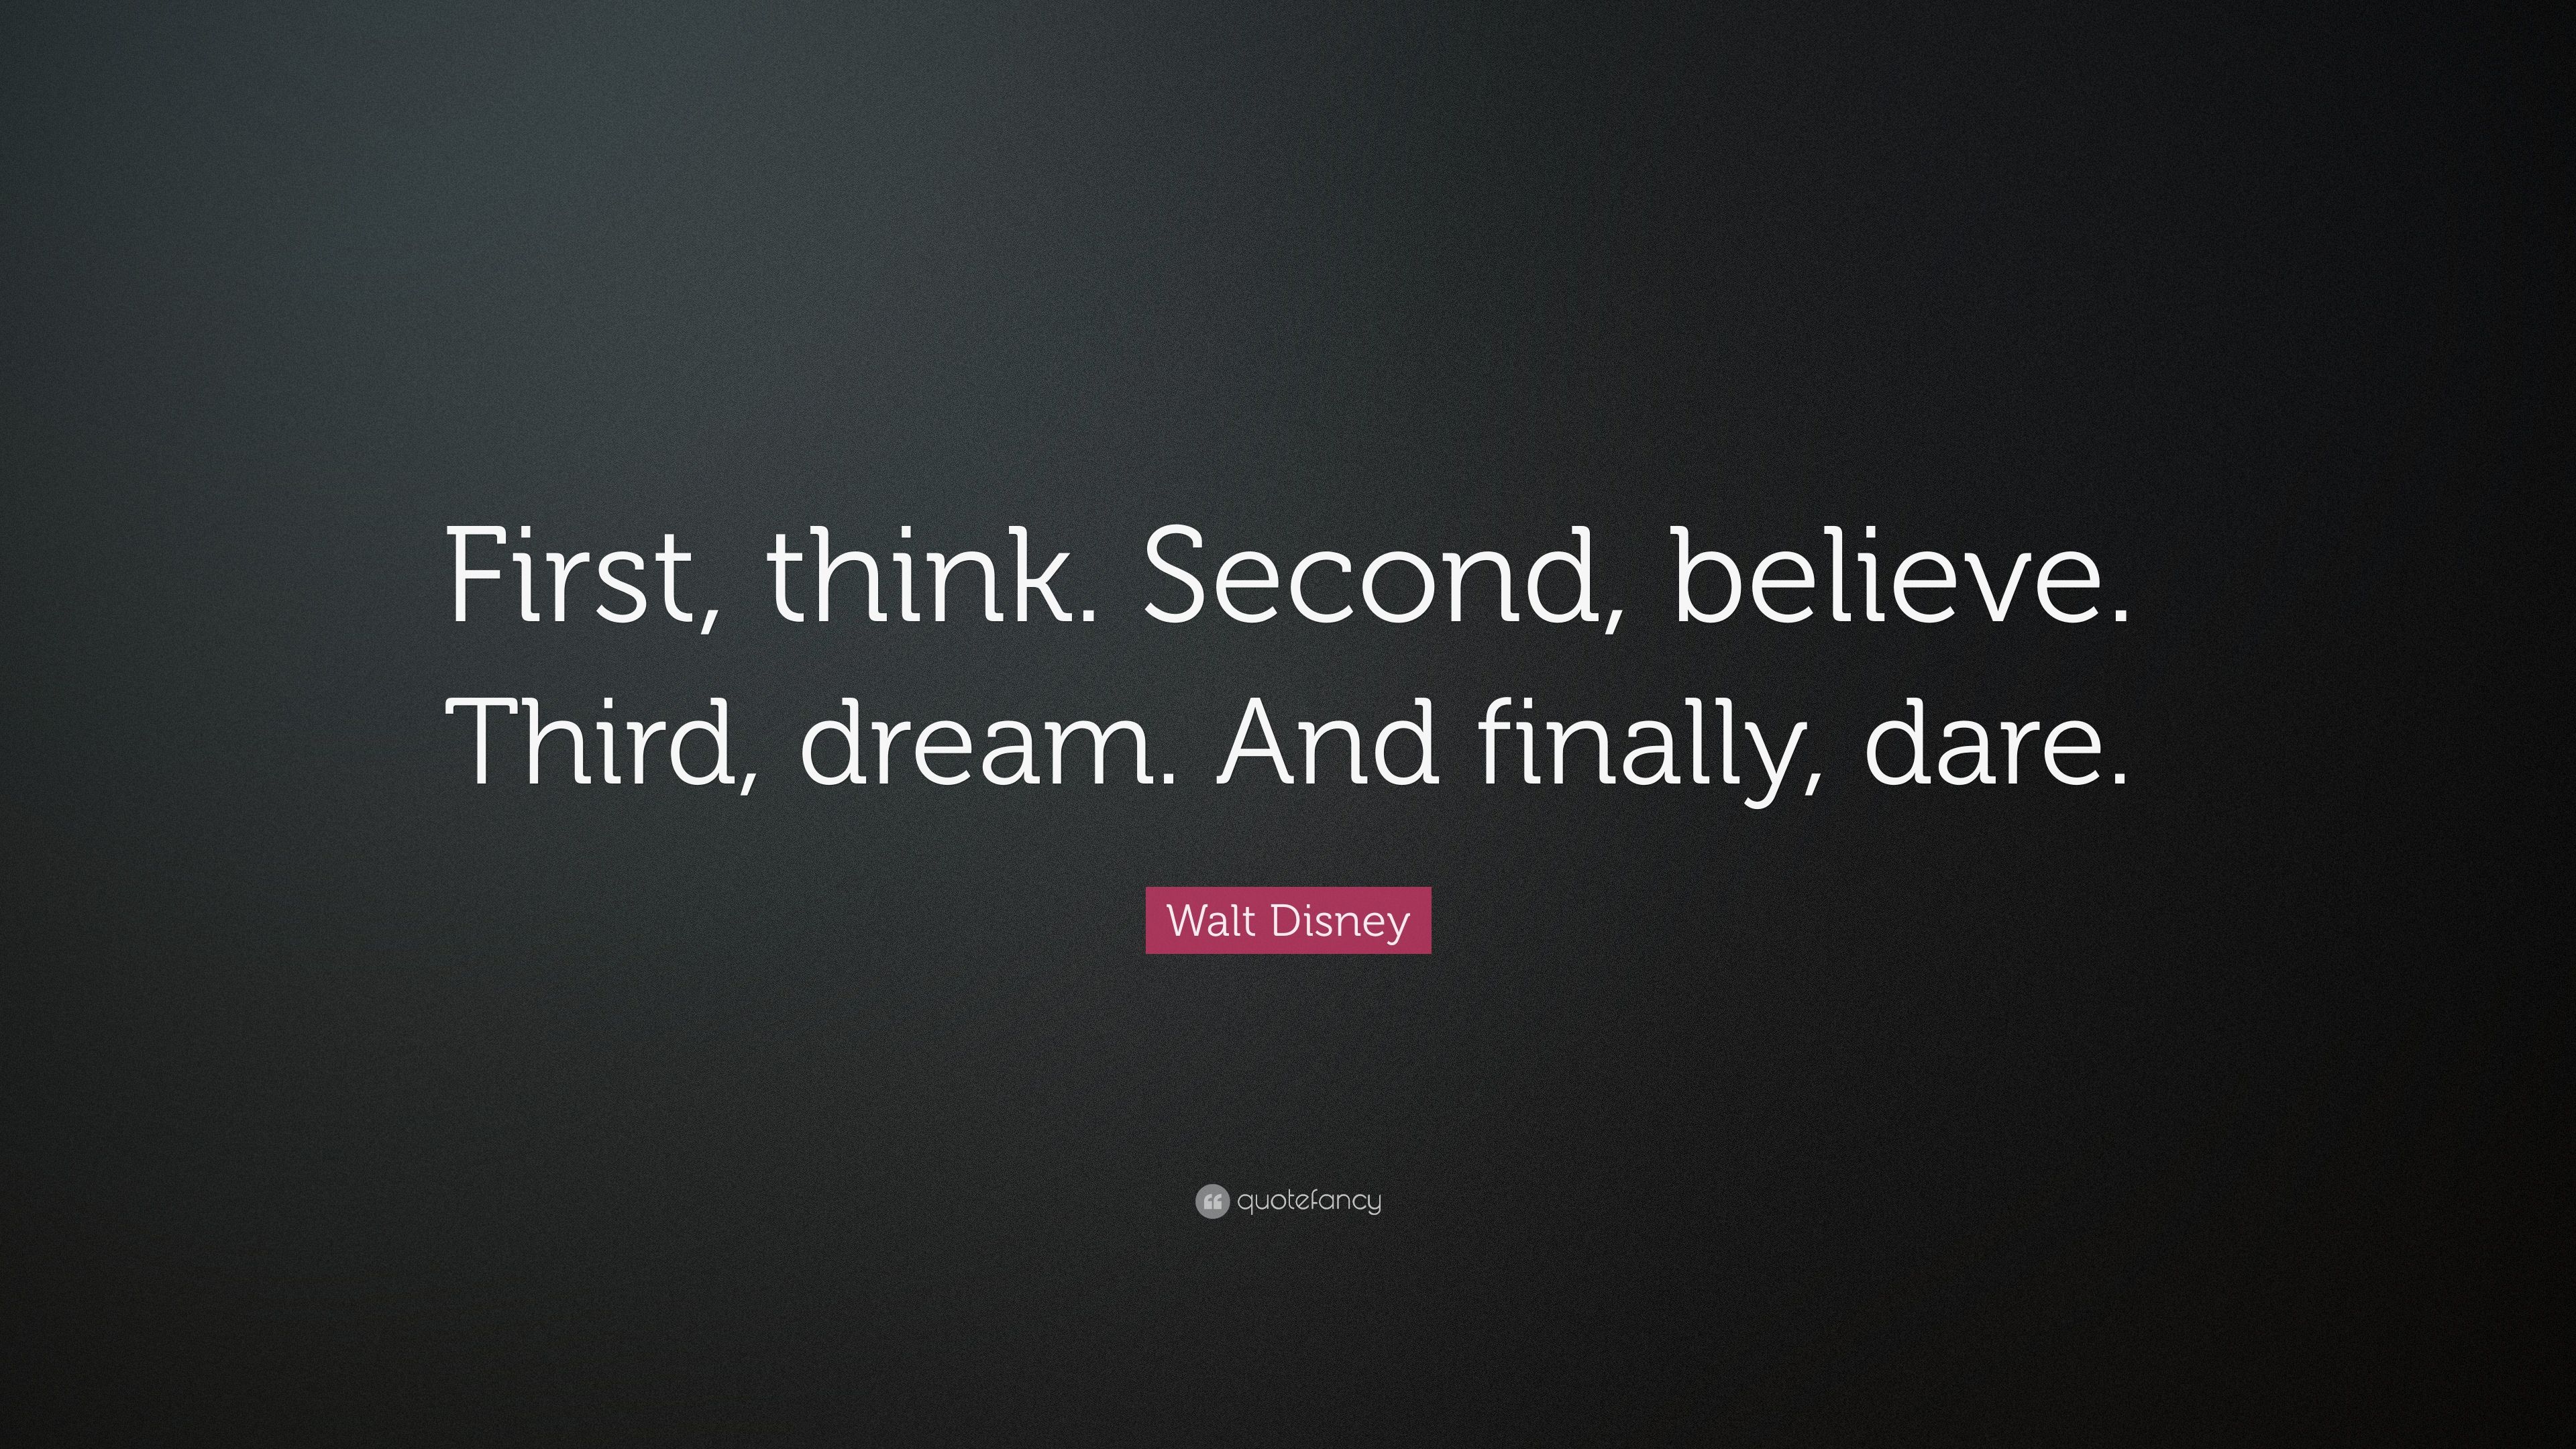 Walt Disney Quote: “First, think. Second, believe. Third, dream